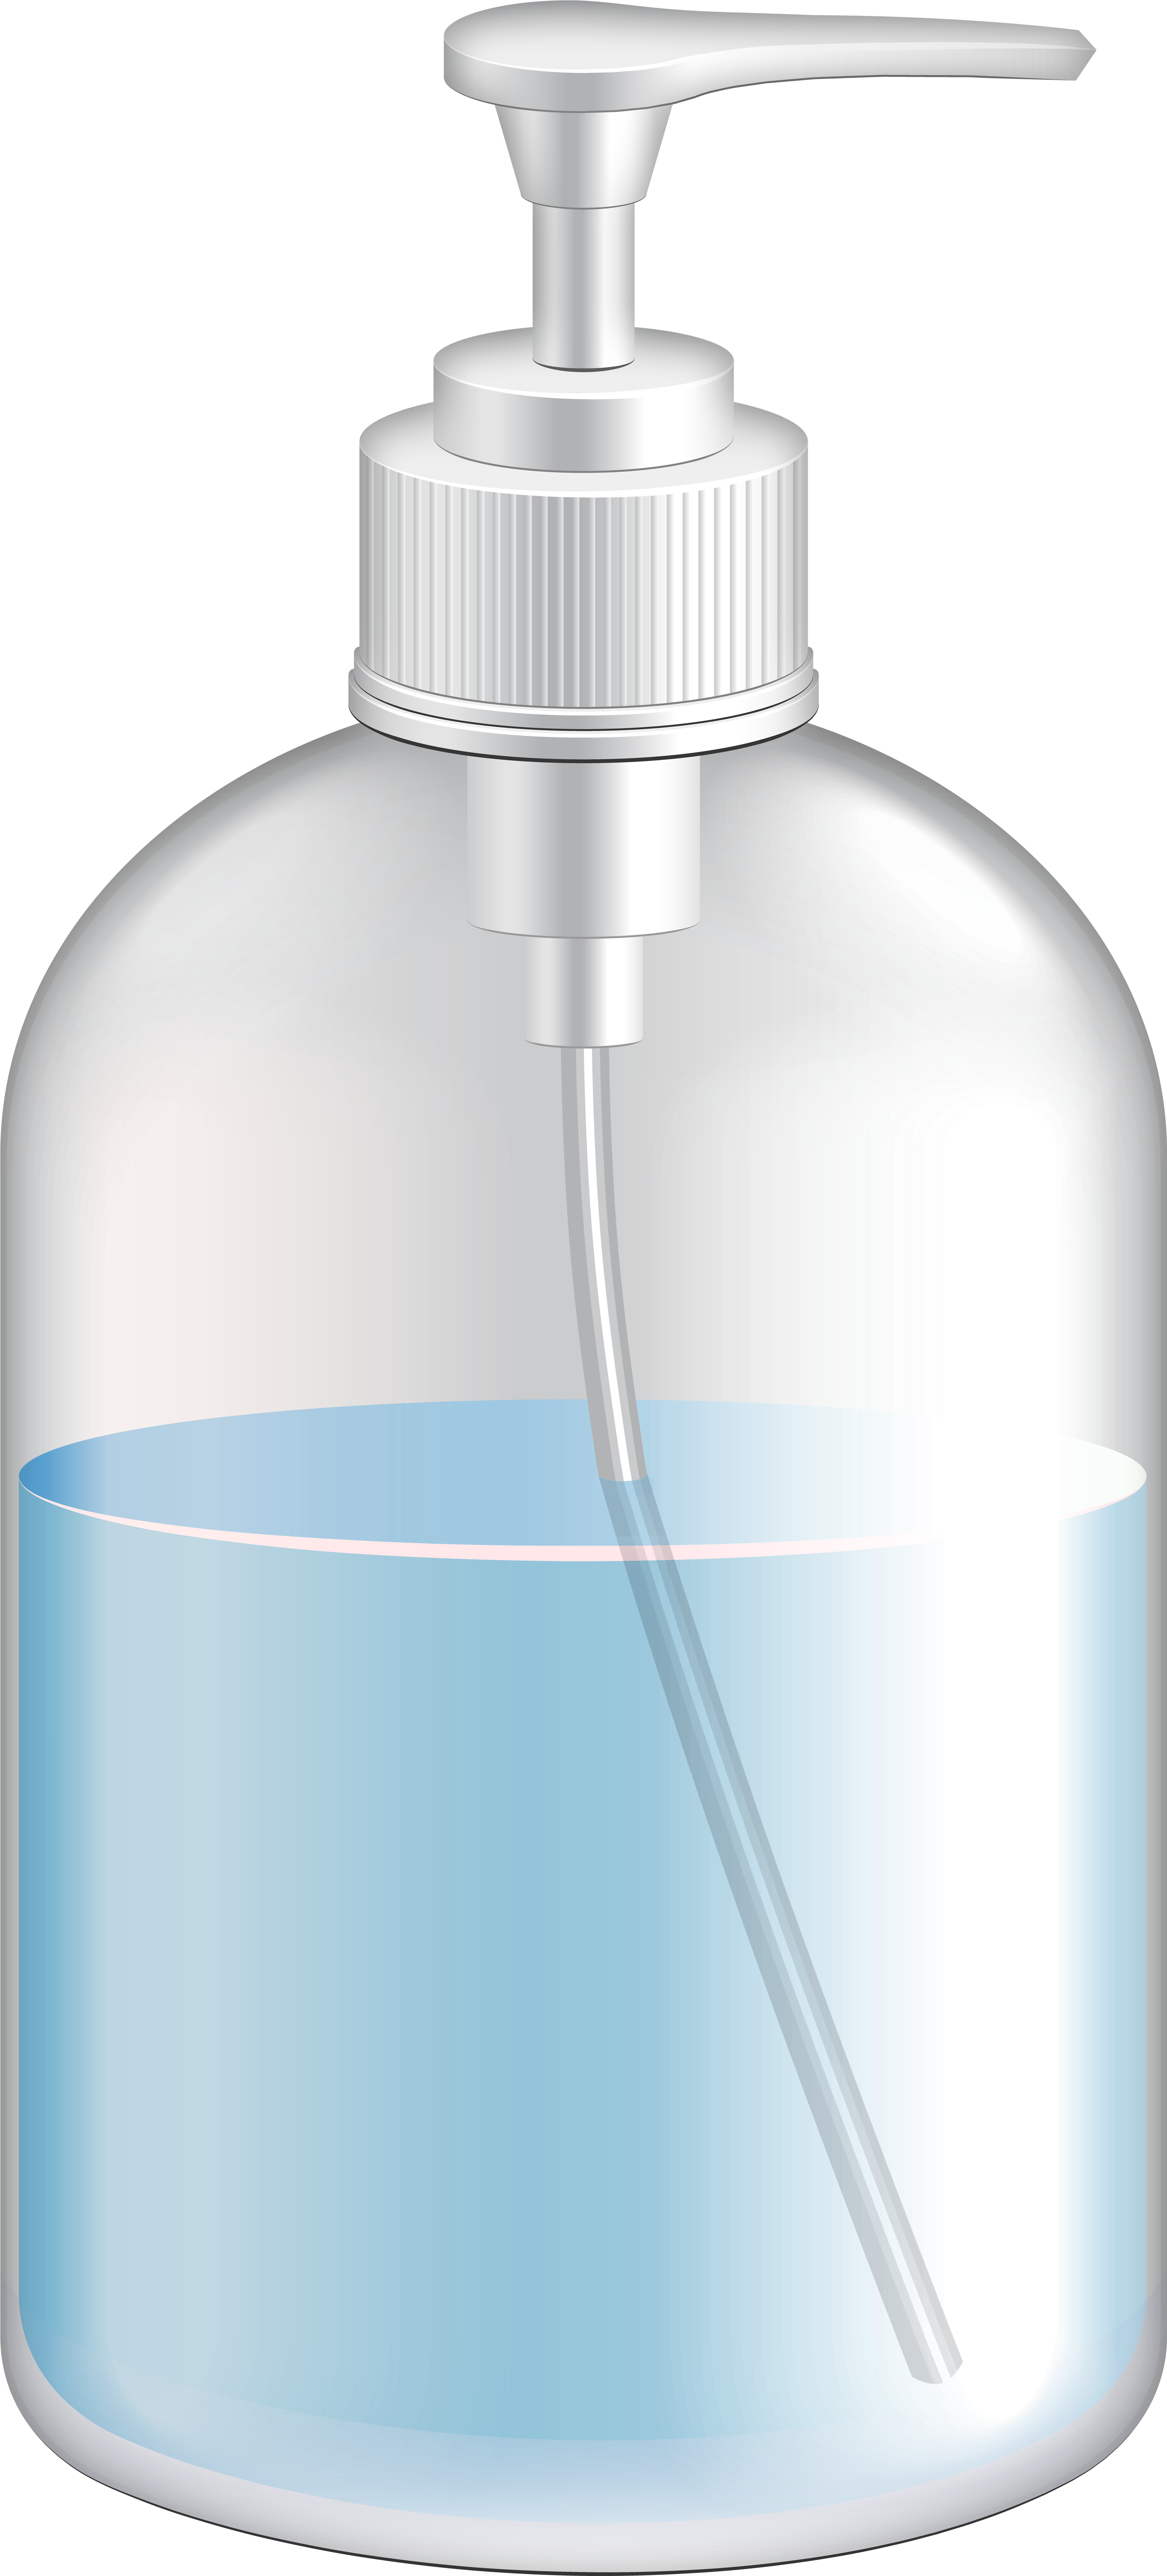 Hand Soap Bottle Transparent Image - Plastic Bottle Clipart (3692x8000), Png Download